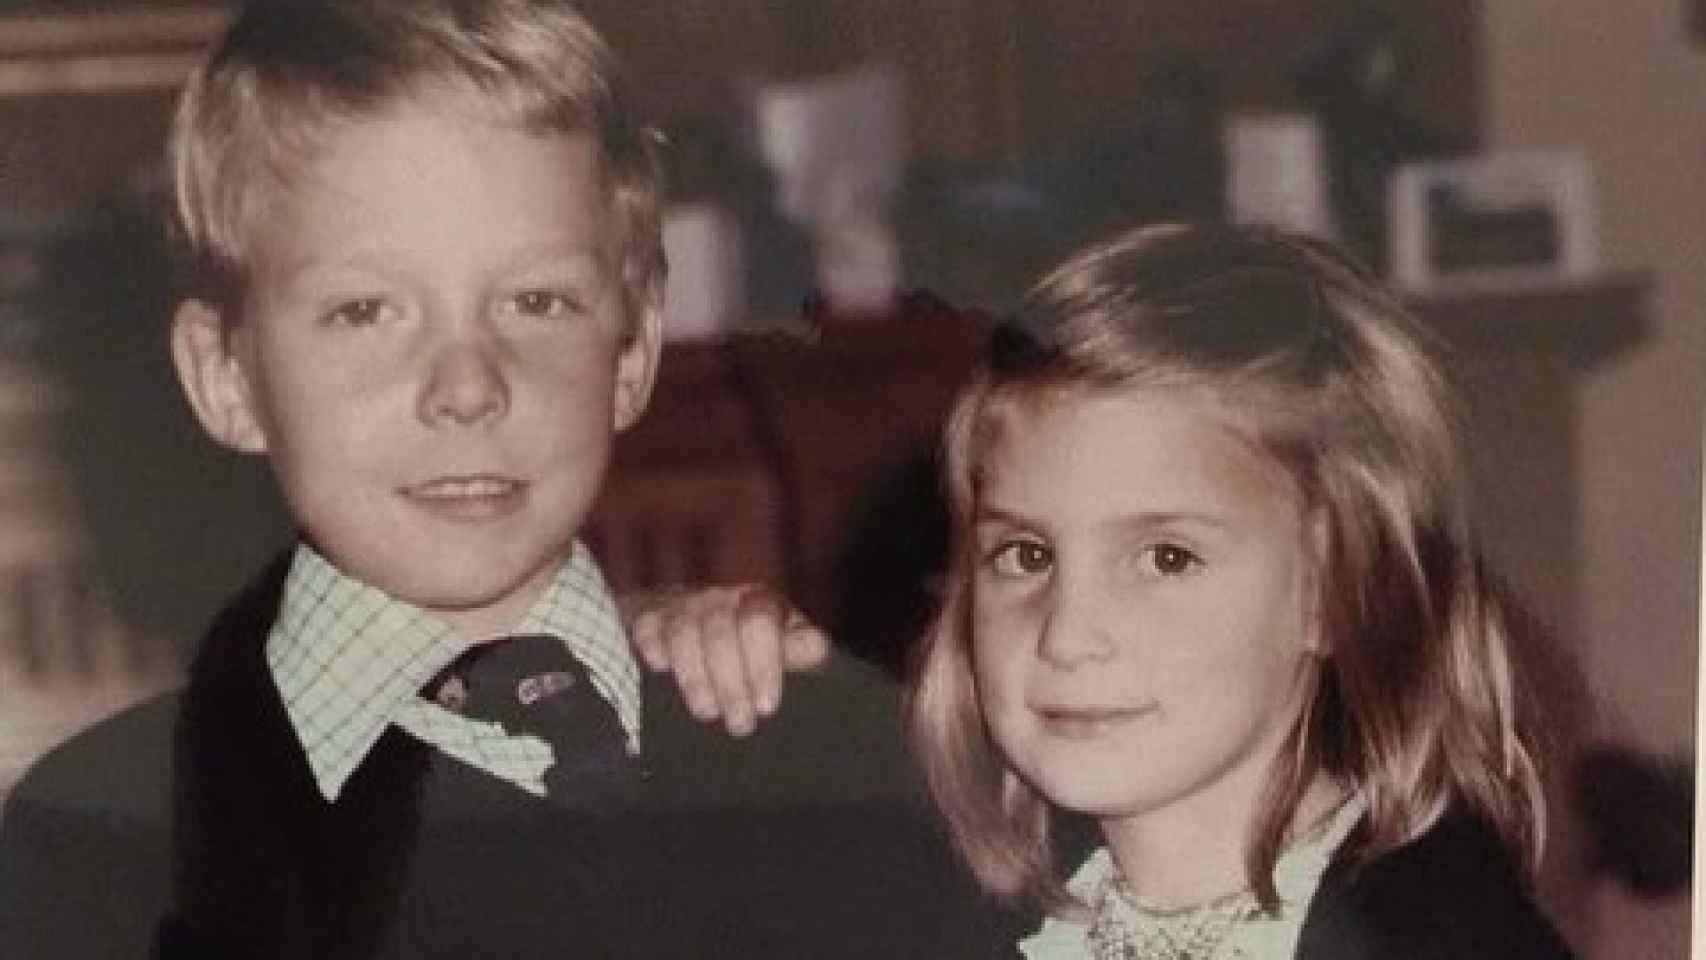 María Zurita y Fernando Gómez-Acebo cuando eran niños. Imagen compartida por la hija de la infanta Margarita.